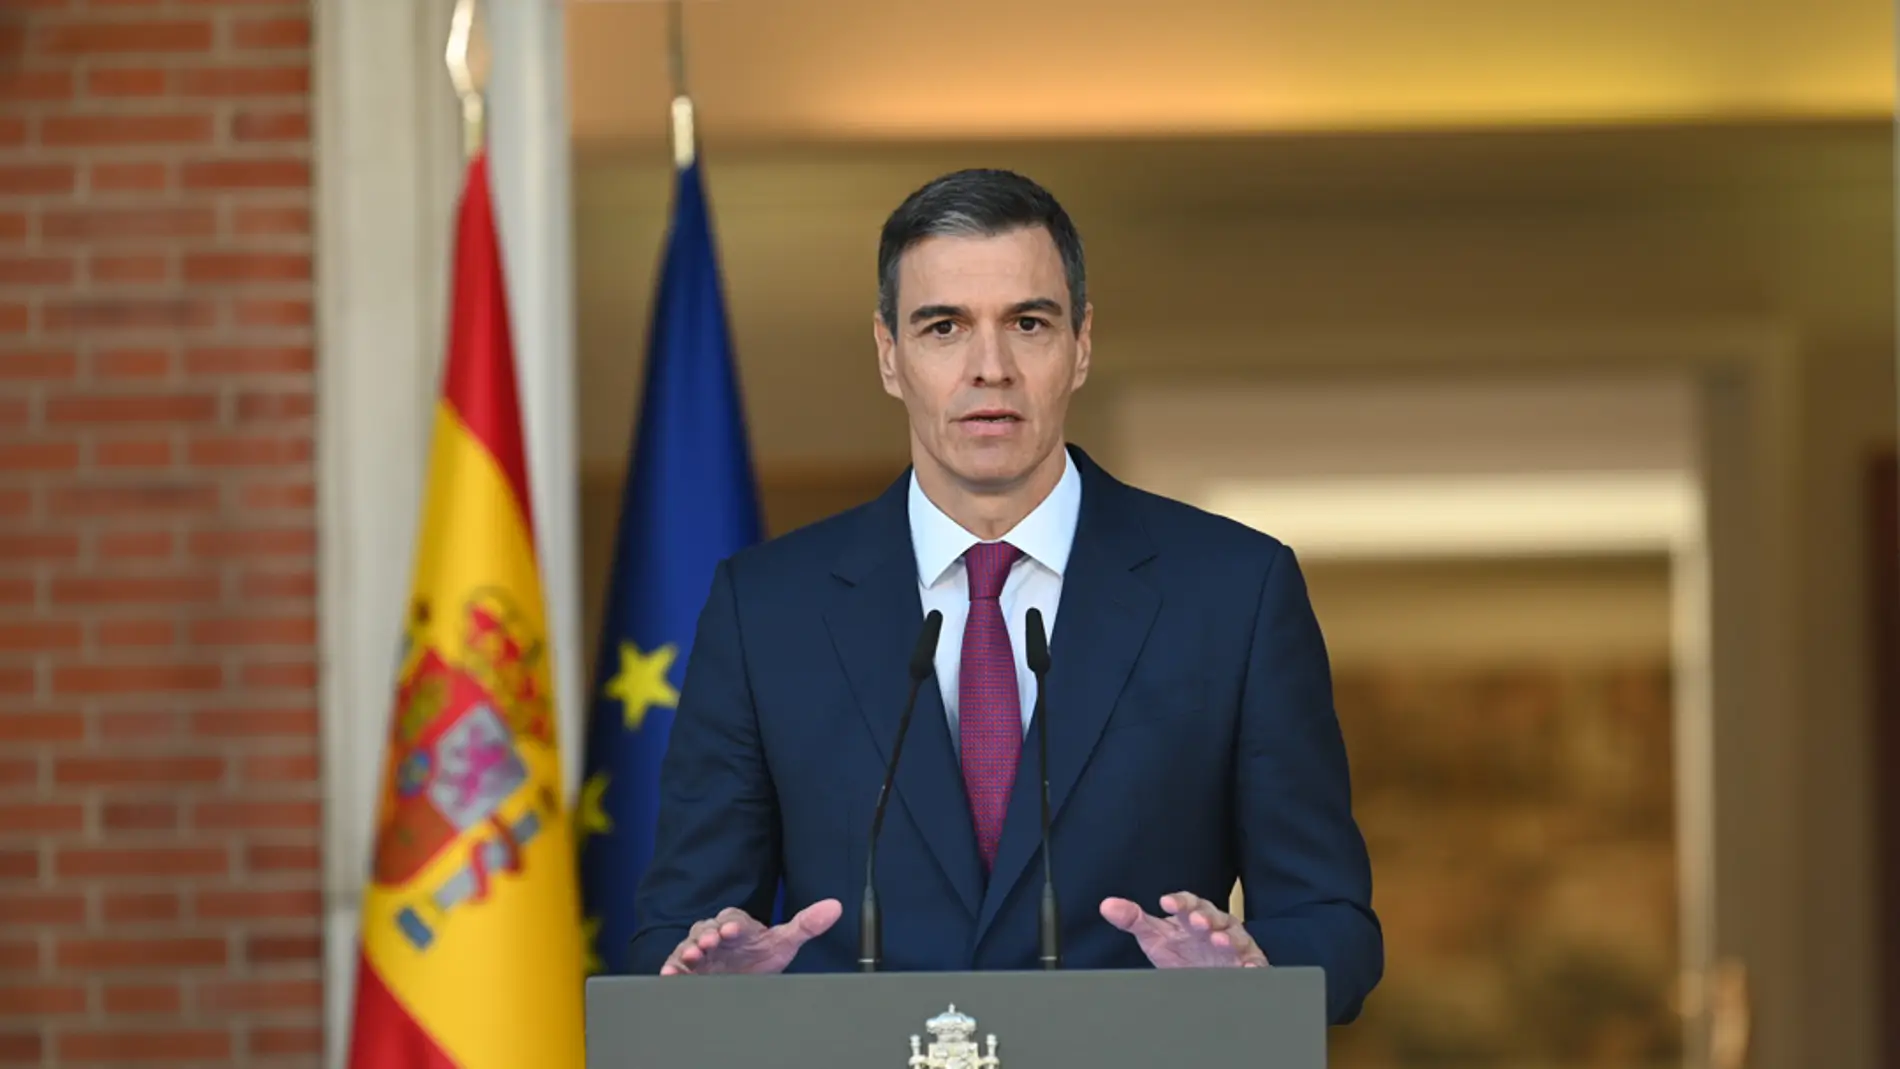 El presidente del Gobierno, Pedro Sánchez, durante su comparecencia institucional en La Moncloa/ EFE/Moncloa/Borja Puig de la Bellacasa